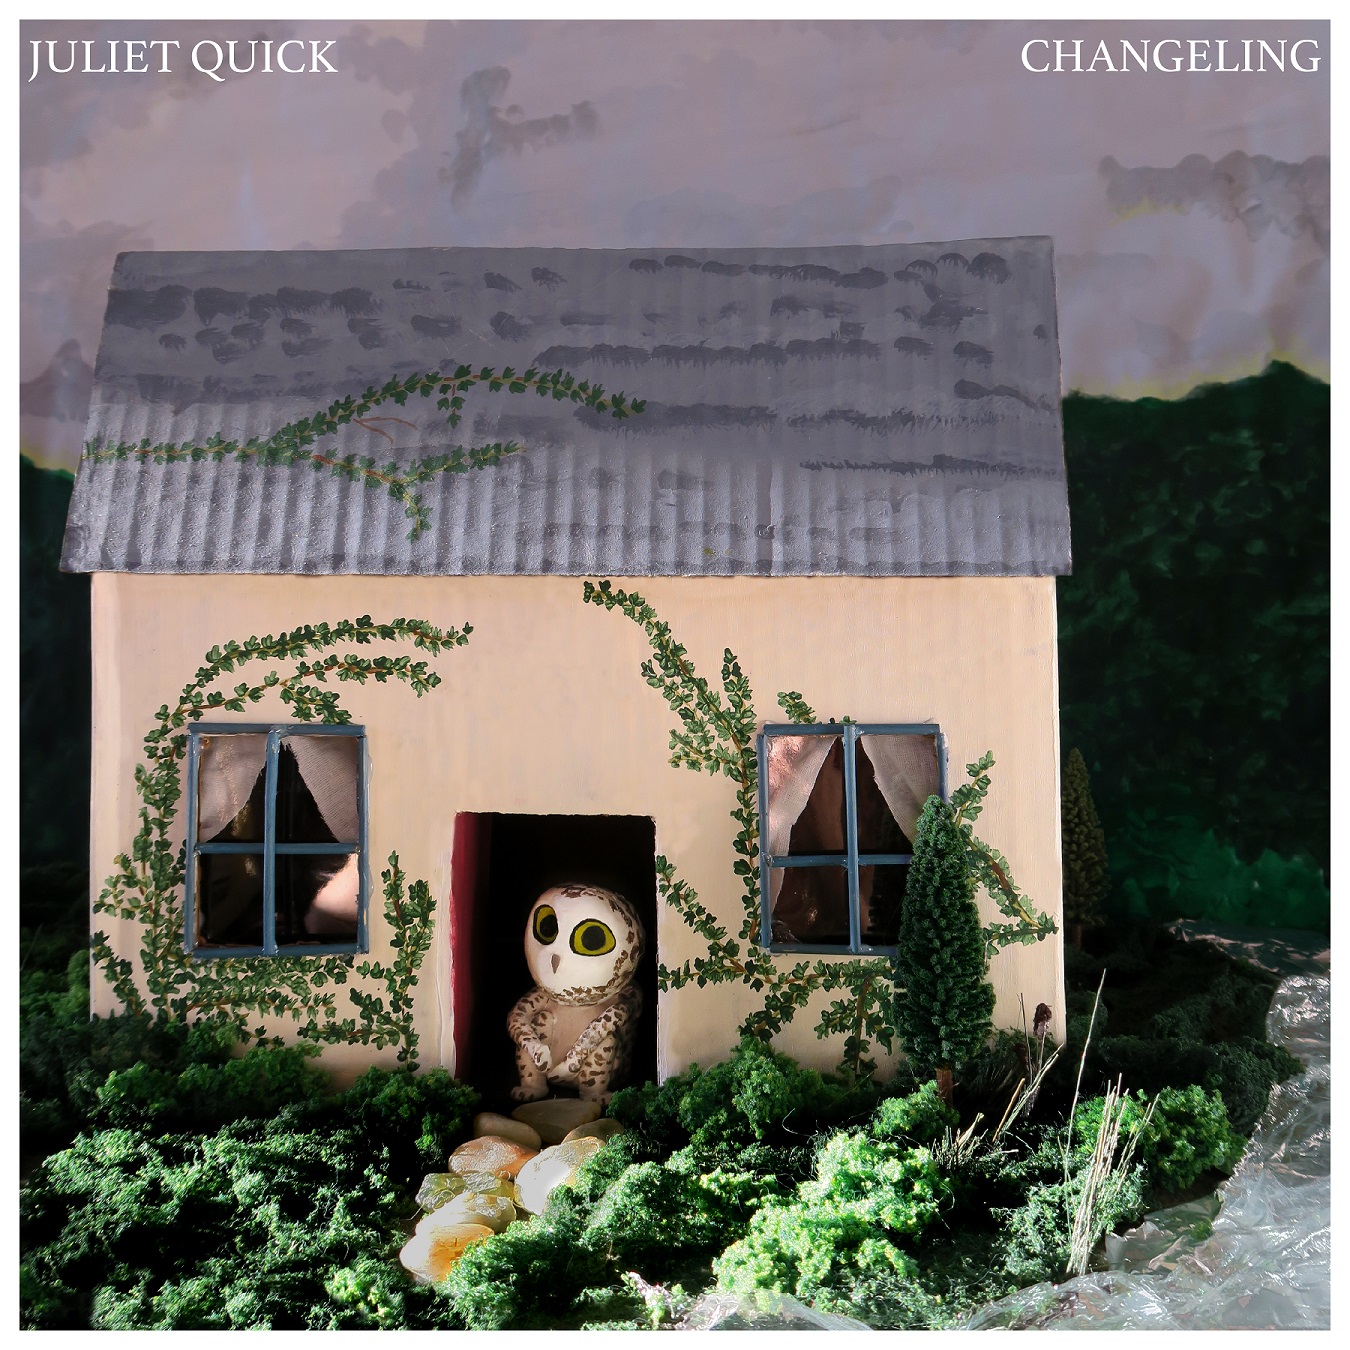 Changeling - Juliet Quick